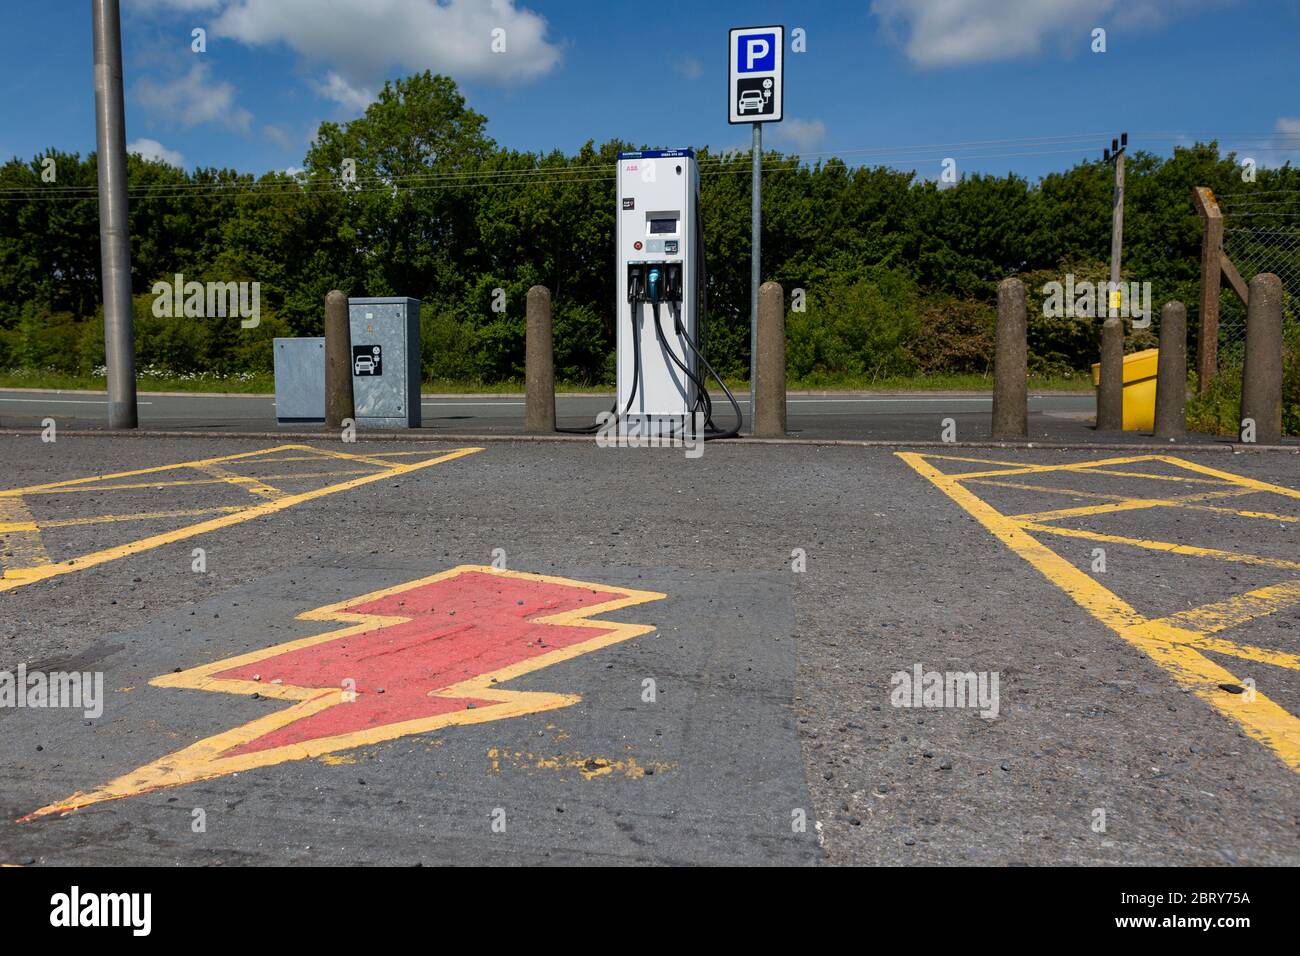 Elektroauto Ladepunkt mit Blitz Symbol auf dem Boden gemalt Stockfoto